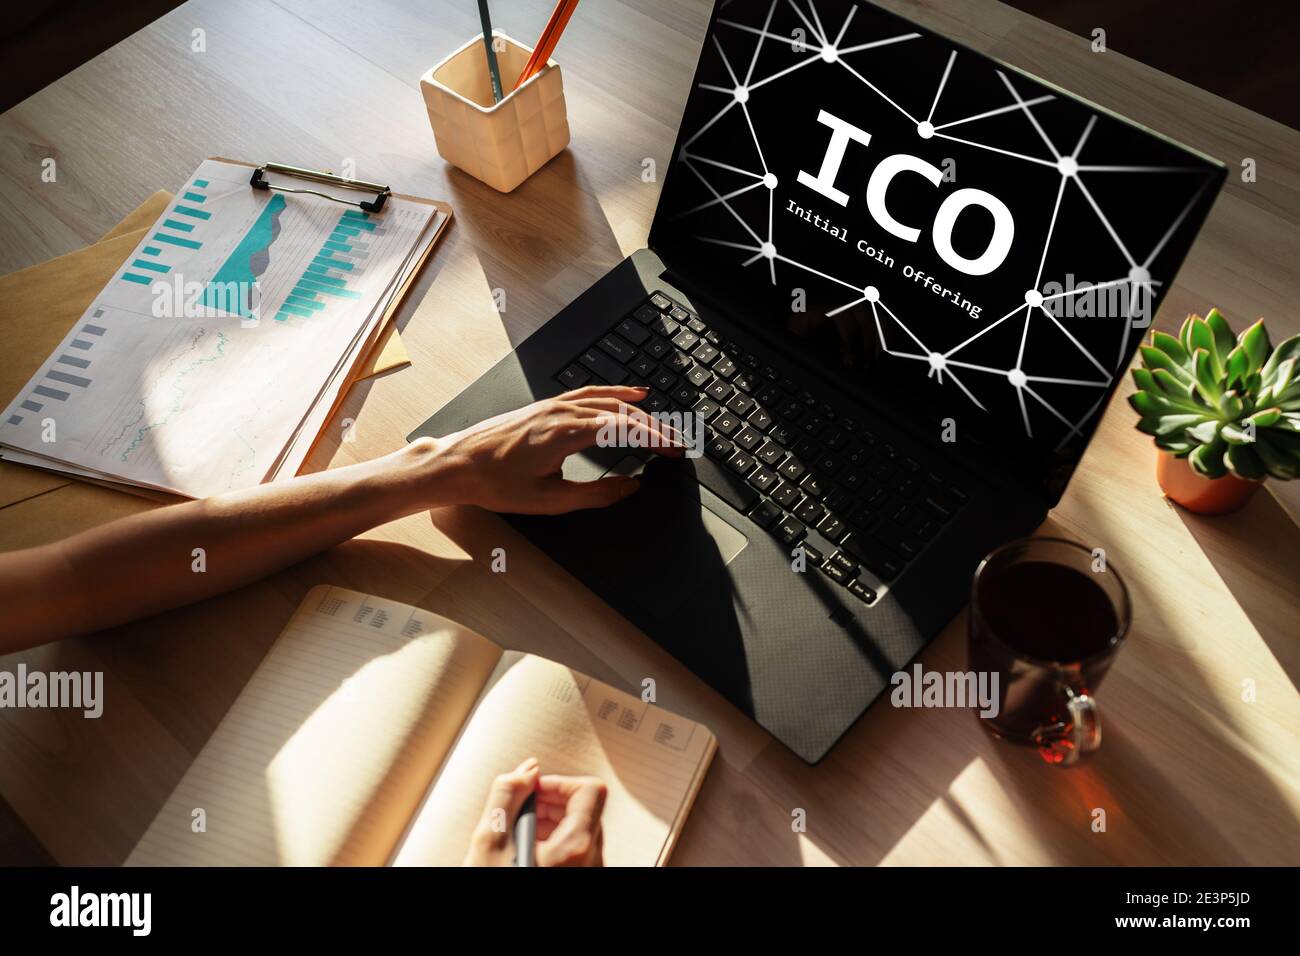 ICO - offre de pièces initiale. Concept de Blockchain et de technologie financière Banque D'Images